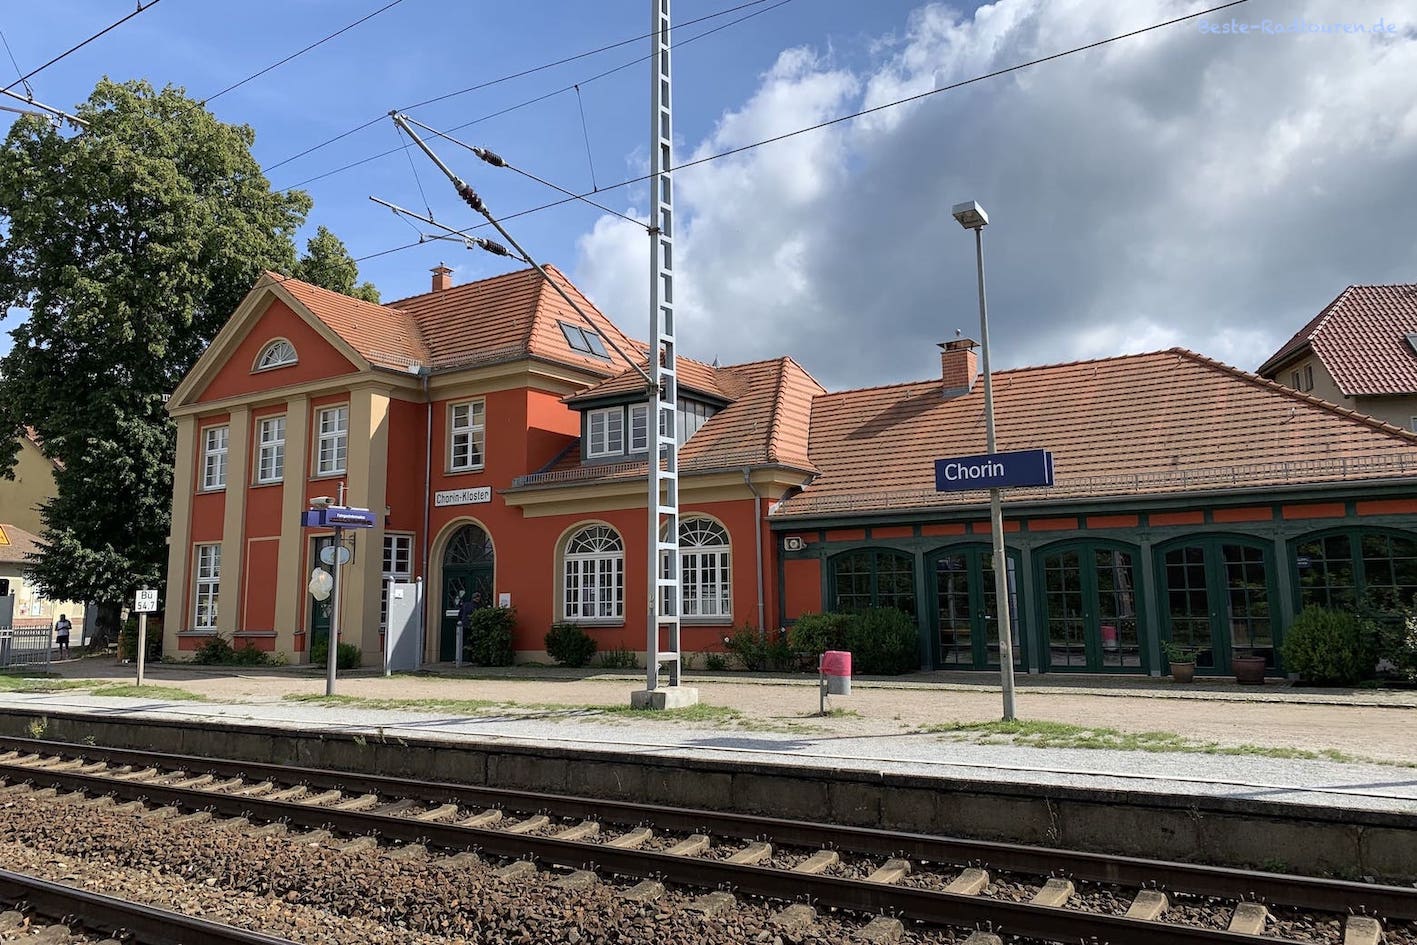 Bahnhof bzw Kaiserbahnhof von Chorin-Kloster